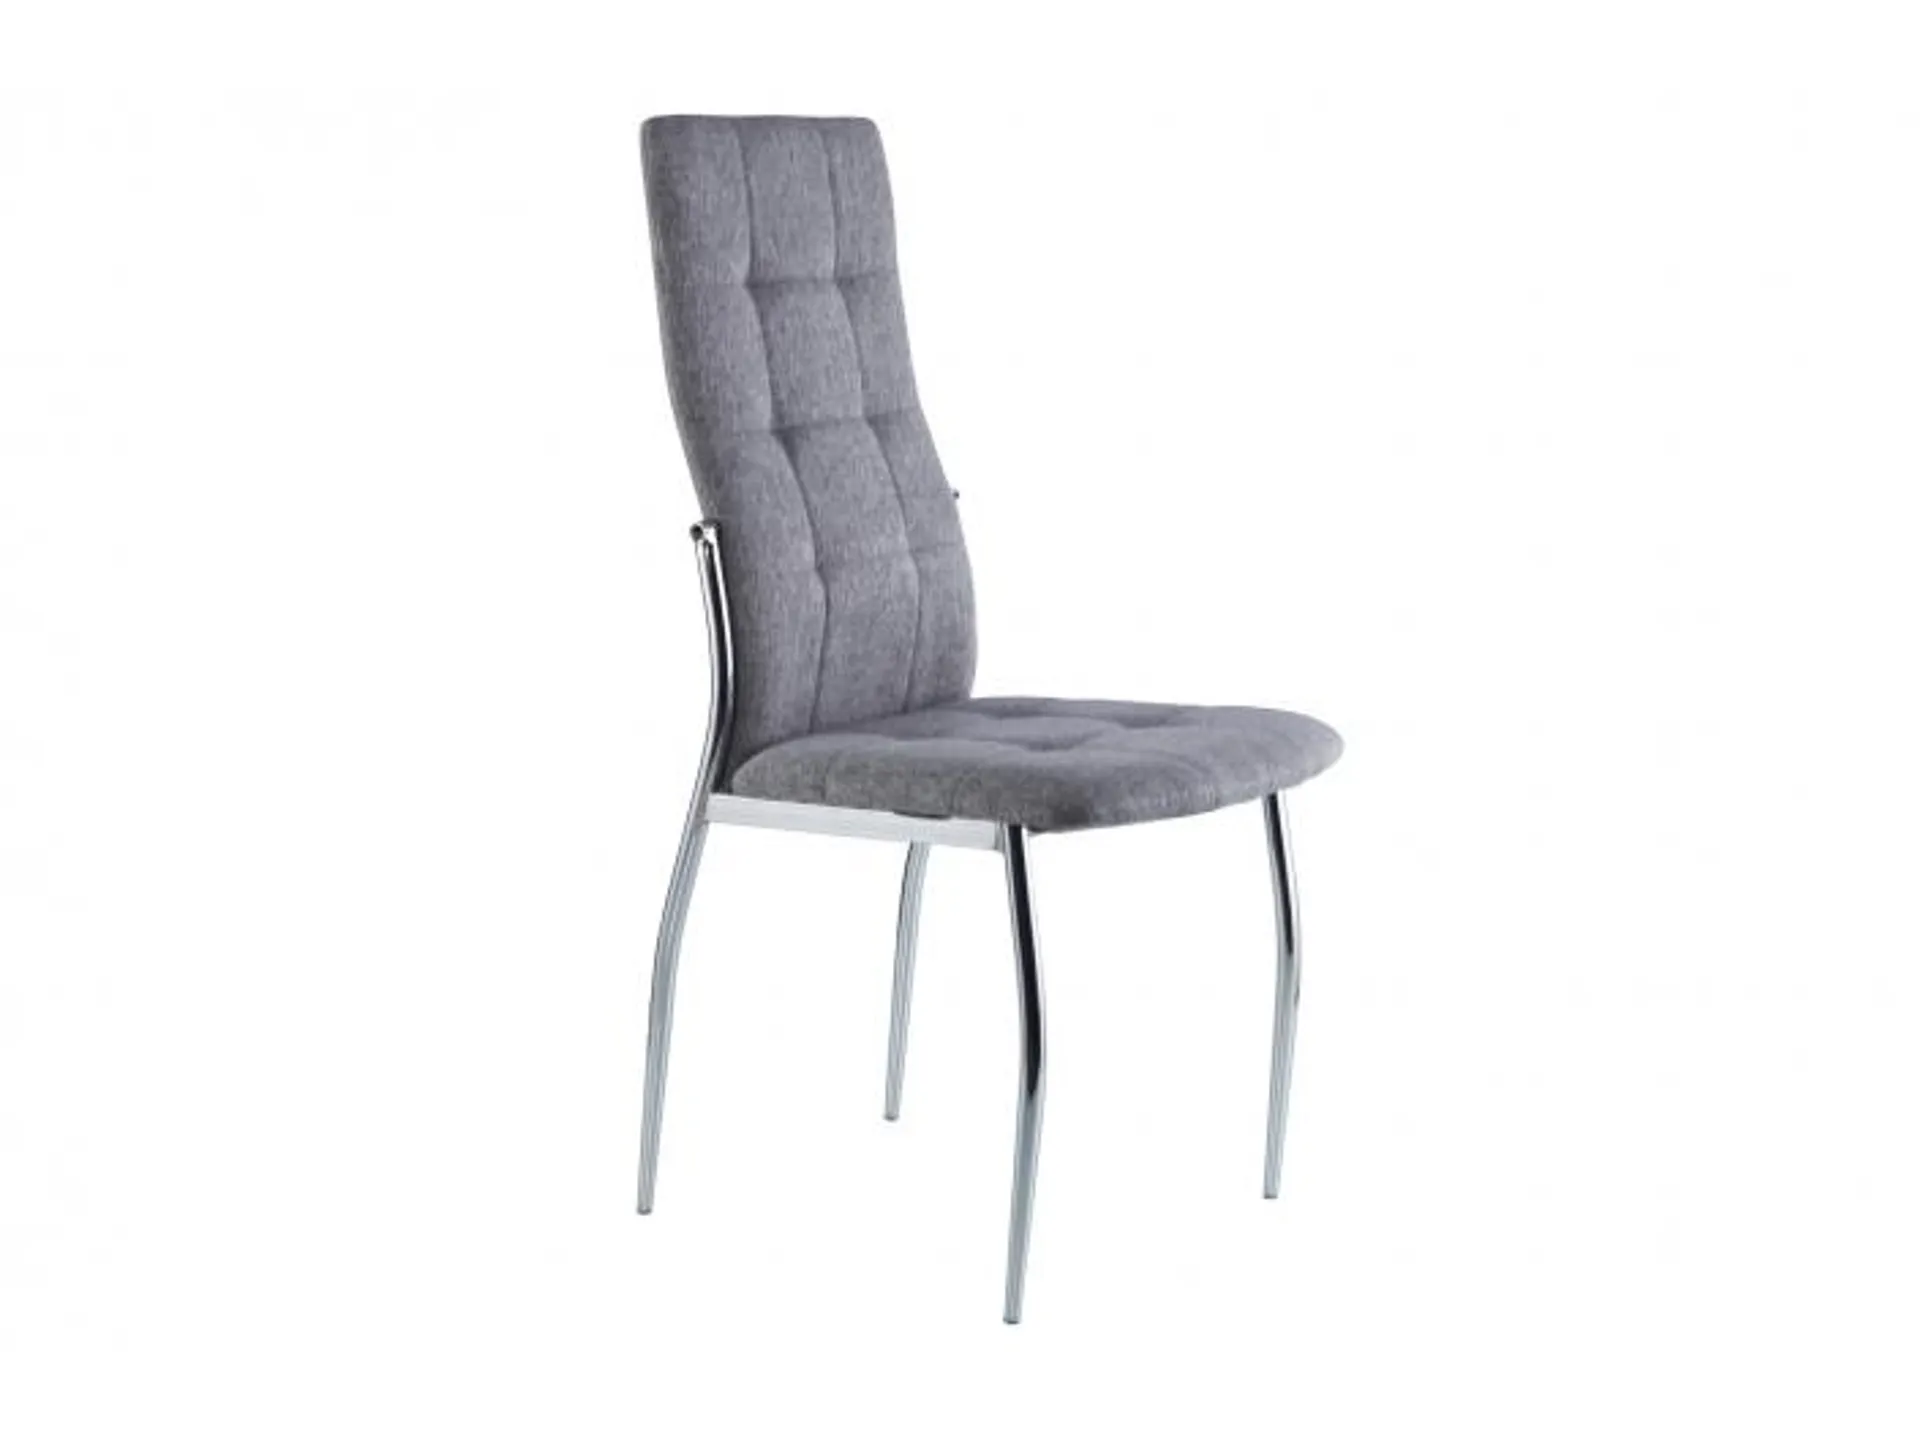 Pack 4 sillas comedor tapizada tejido color gris-cromo